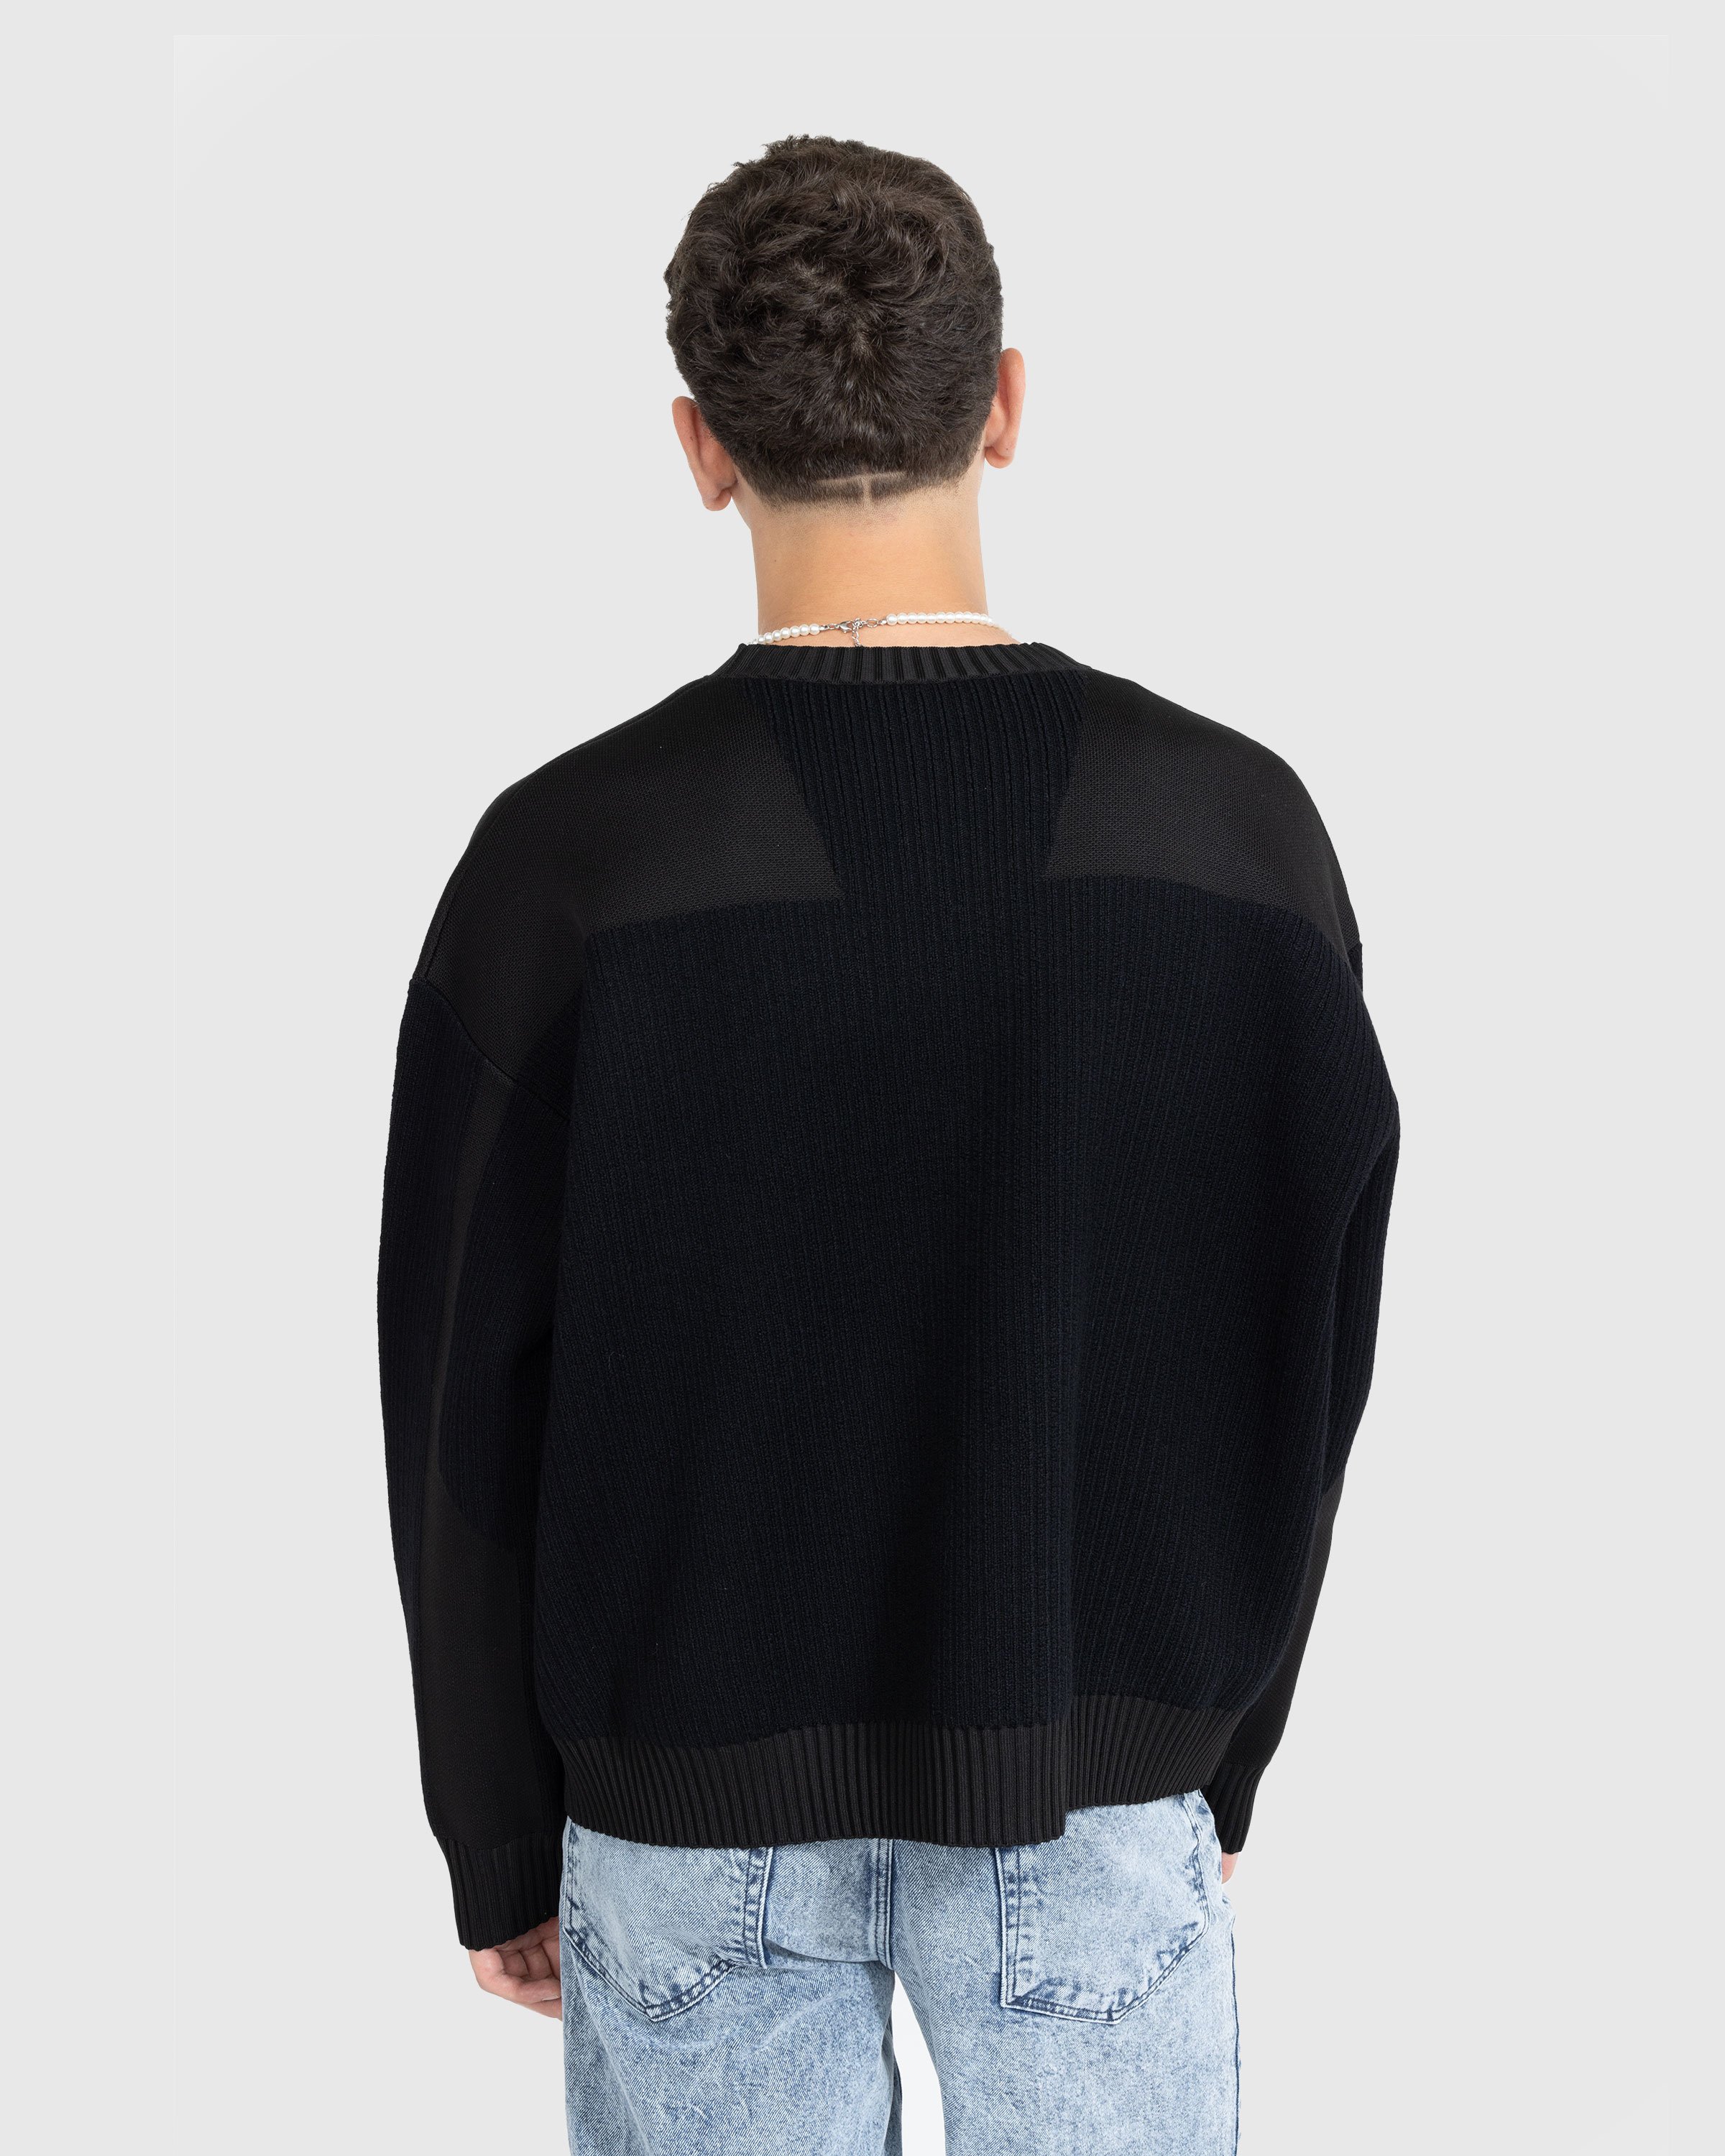 Y-3 - Utility Crewneck Sweater Black - Clothing - Black - Image 4